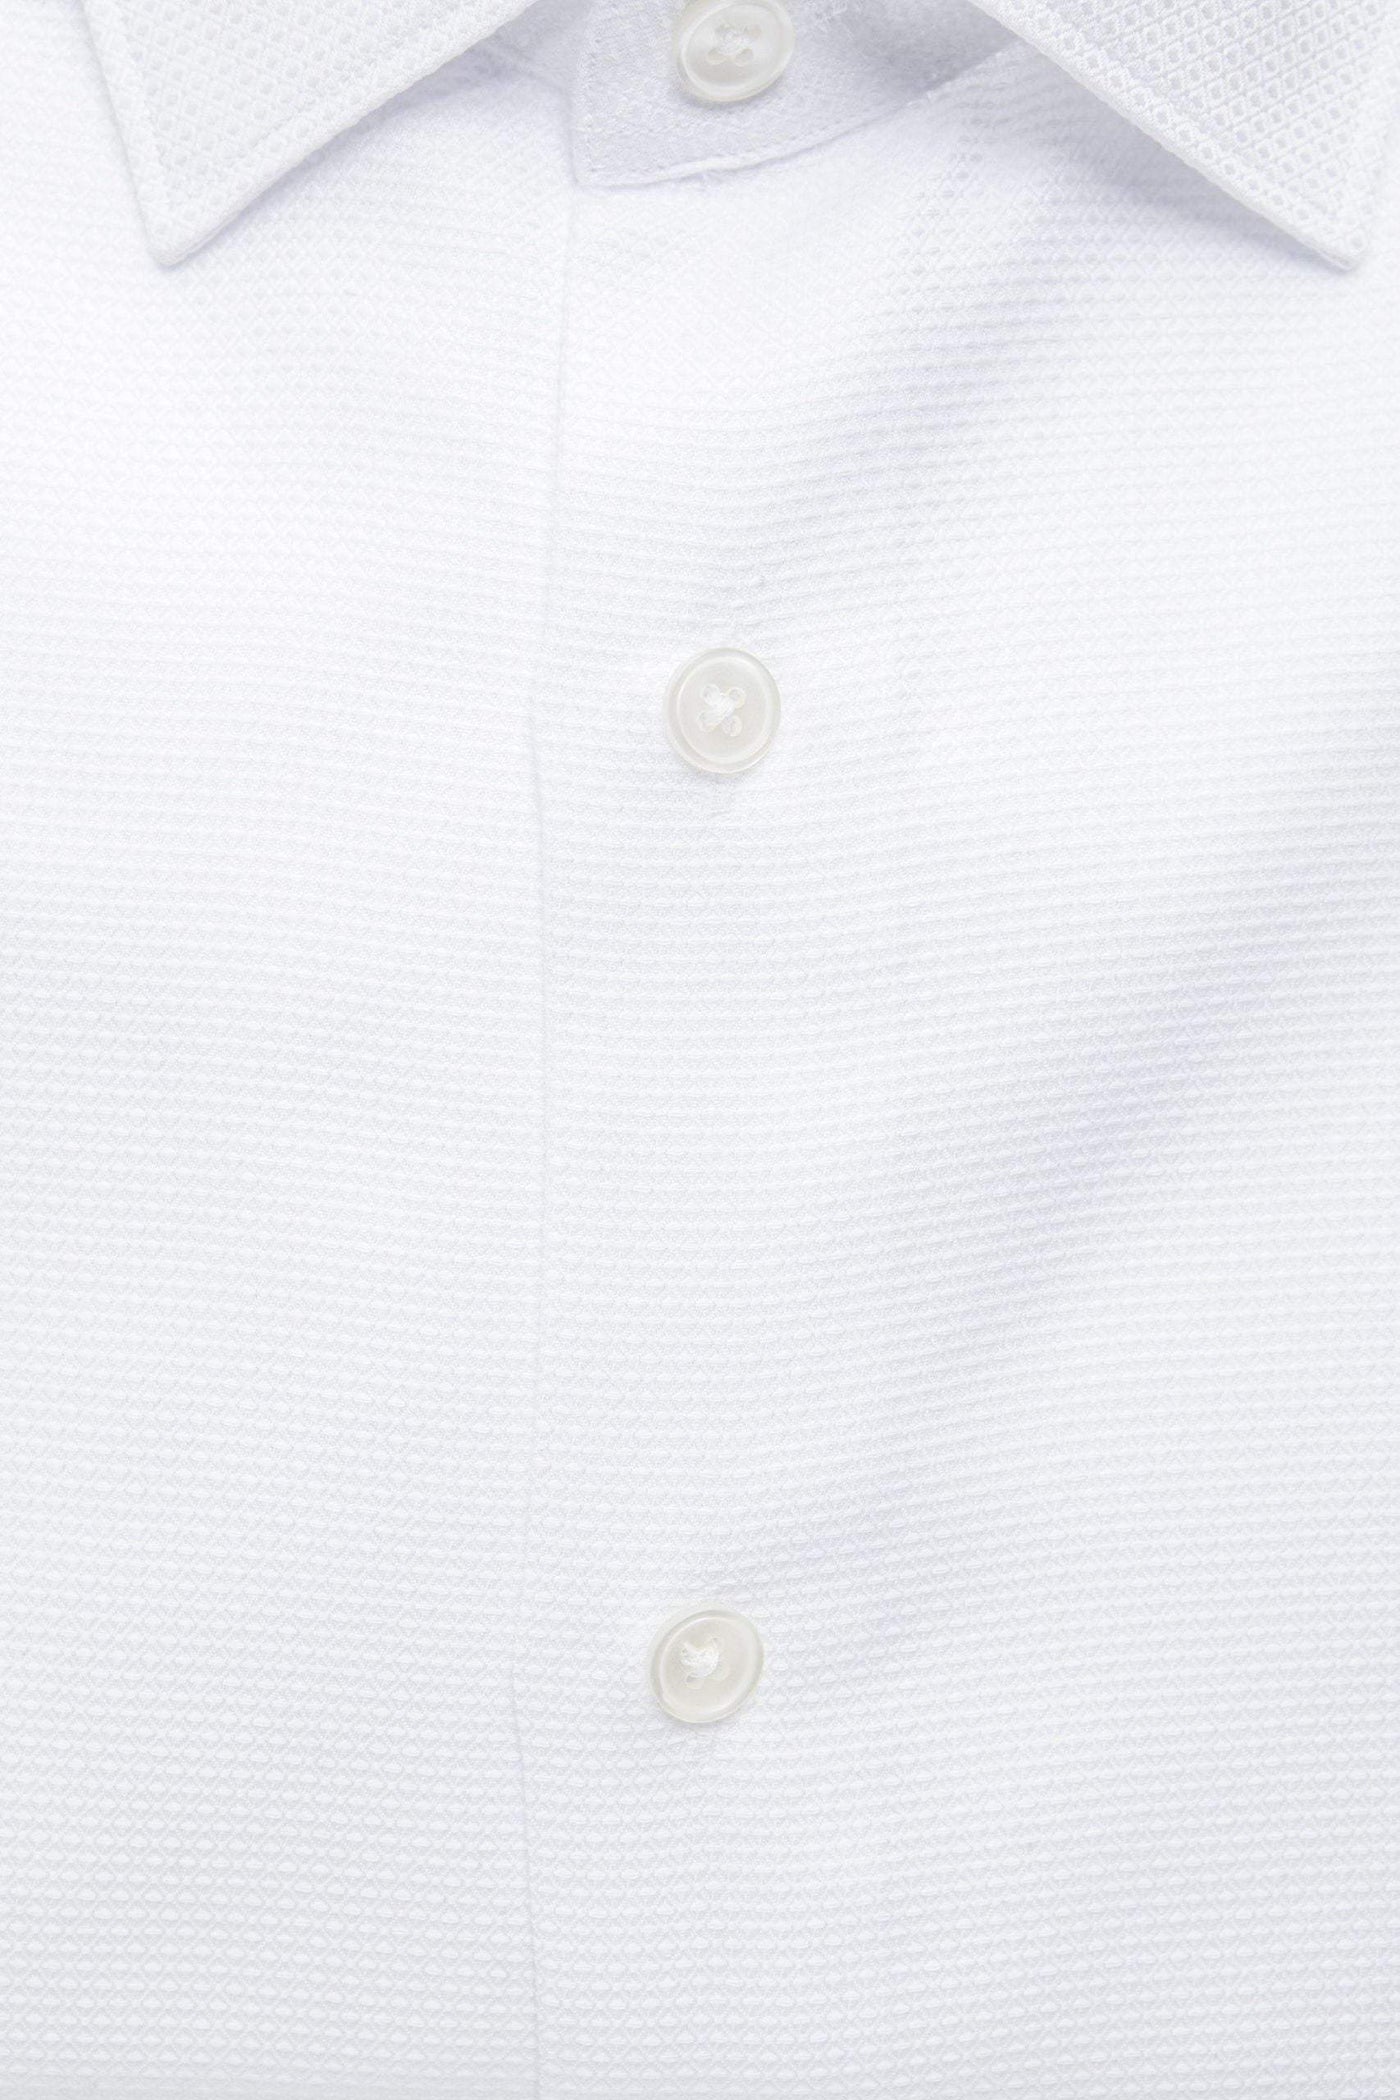 Robert Friedman White Cotton Shirt #men, feed-1, IT40 | M, IT41 | L, IT42 | XL, IT43 | 2XL, Robert Friedman, Shirts - Men - Clothing, White at SEYMAYKA